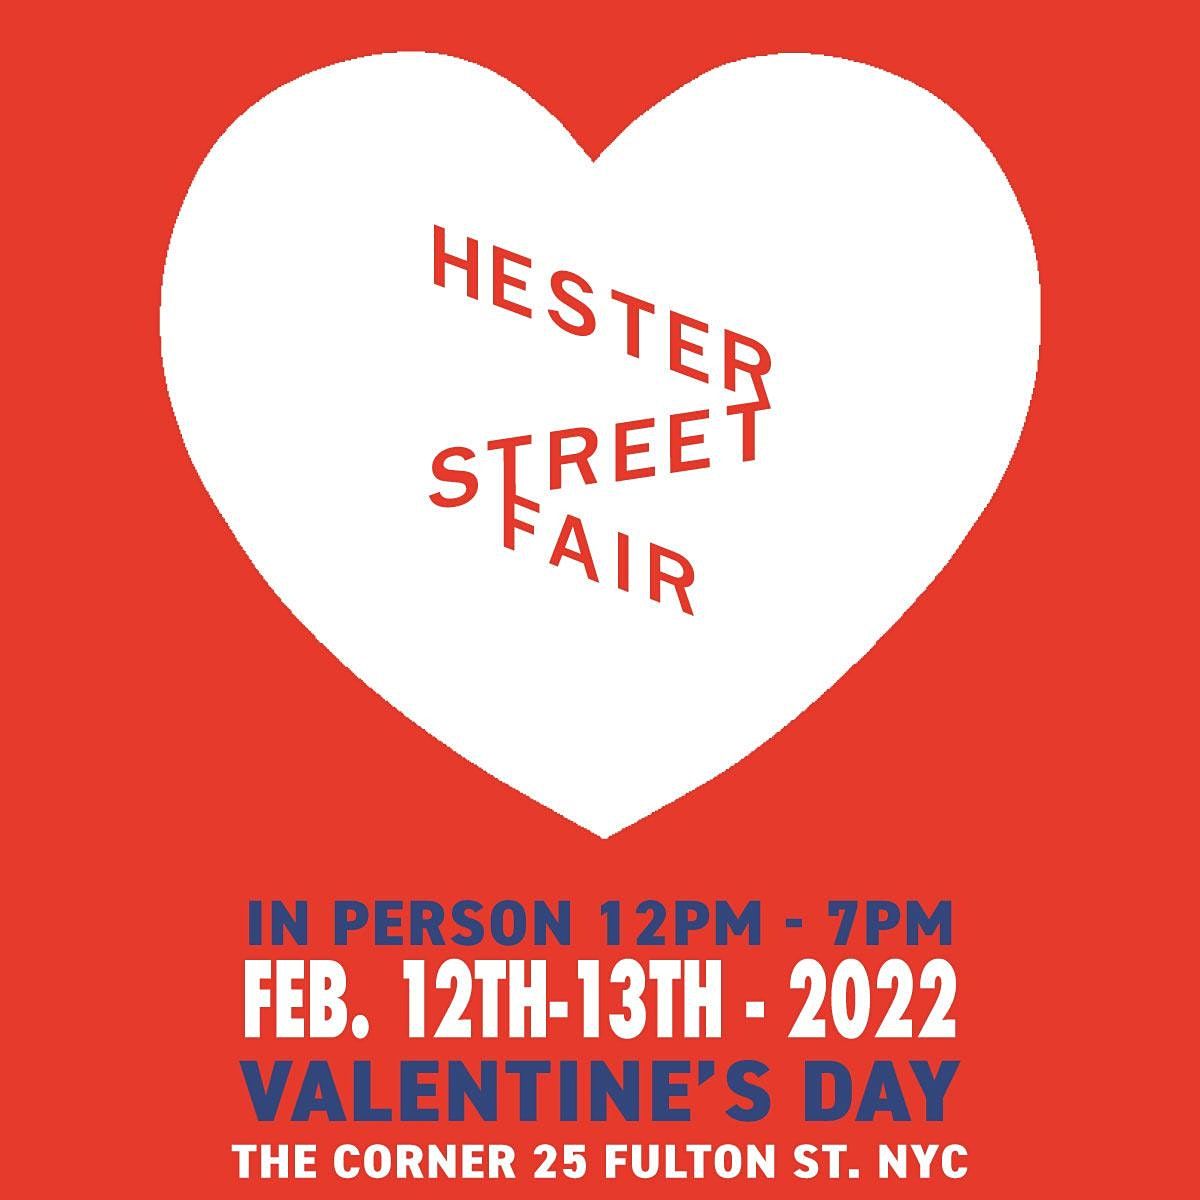 Hester Street Fair Valentine's Day Market